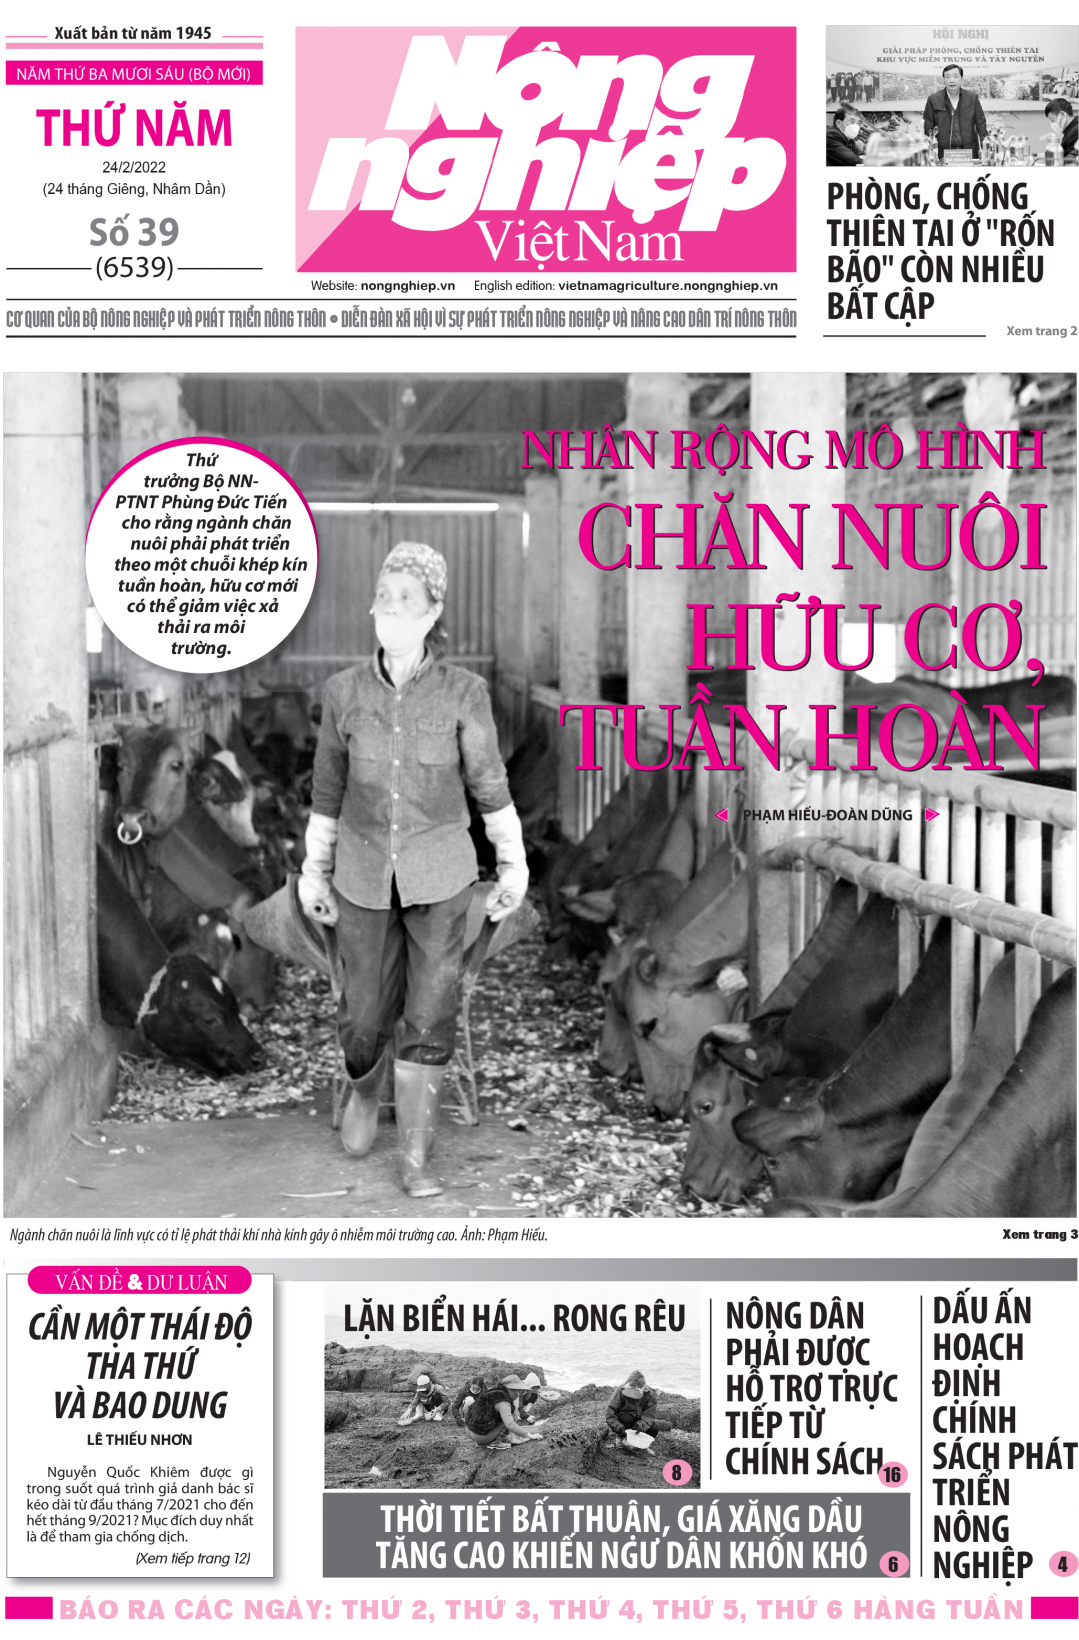 Tổng hợp tin tức báo giấy trên Báo Nông nghiệp Việt Nam số 39 ra ngày 24/2/2022